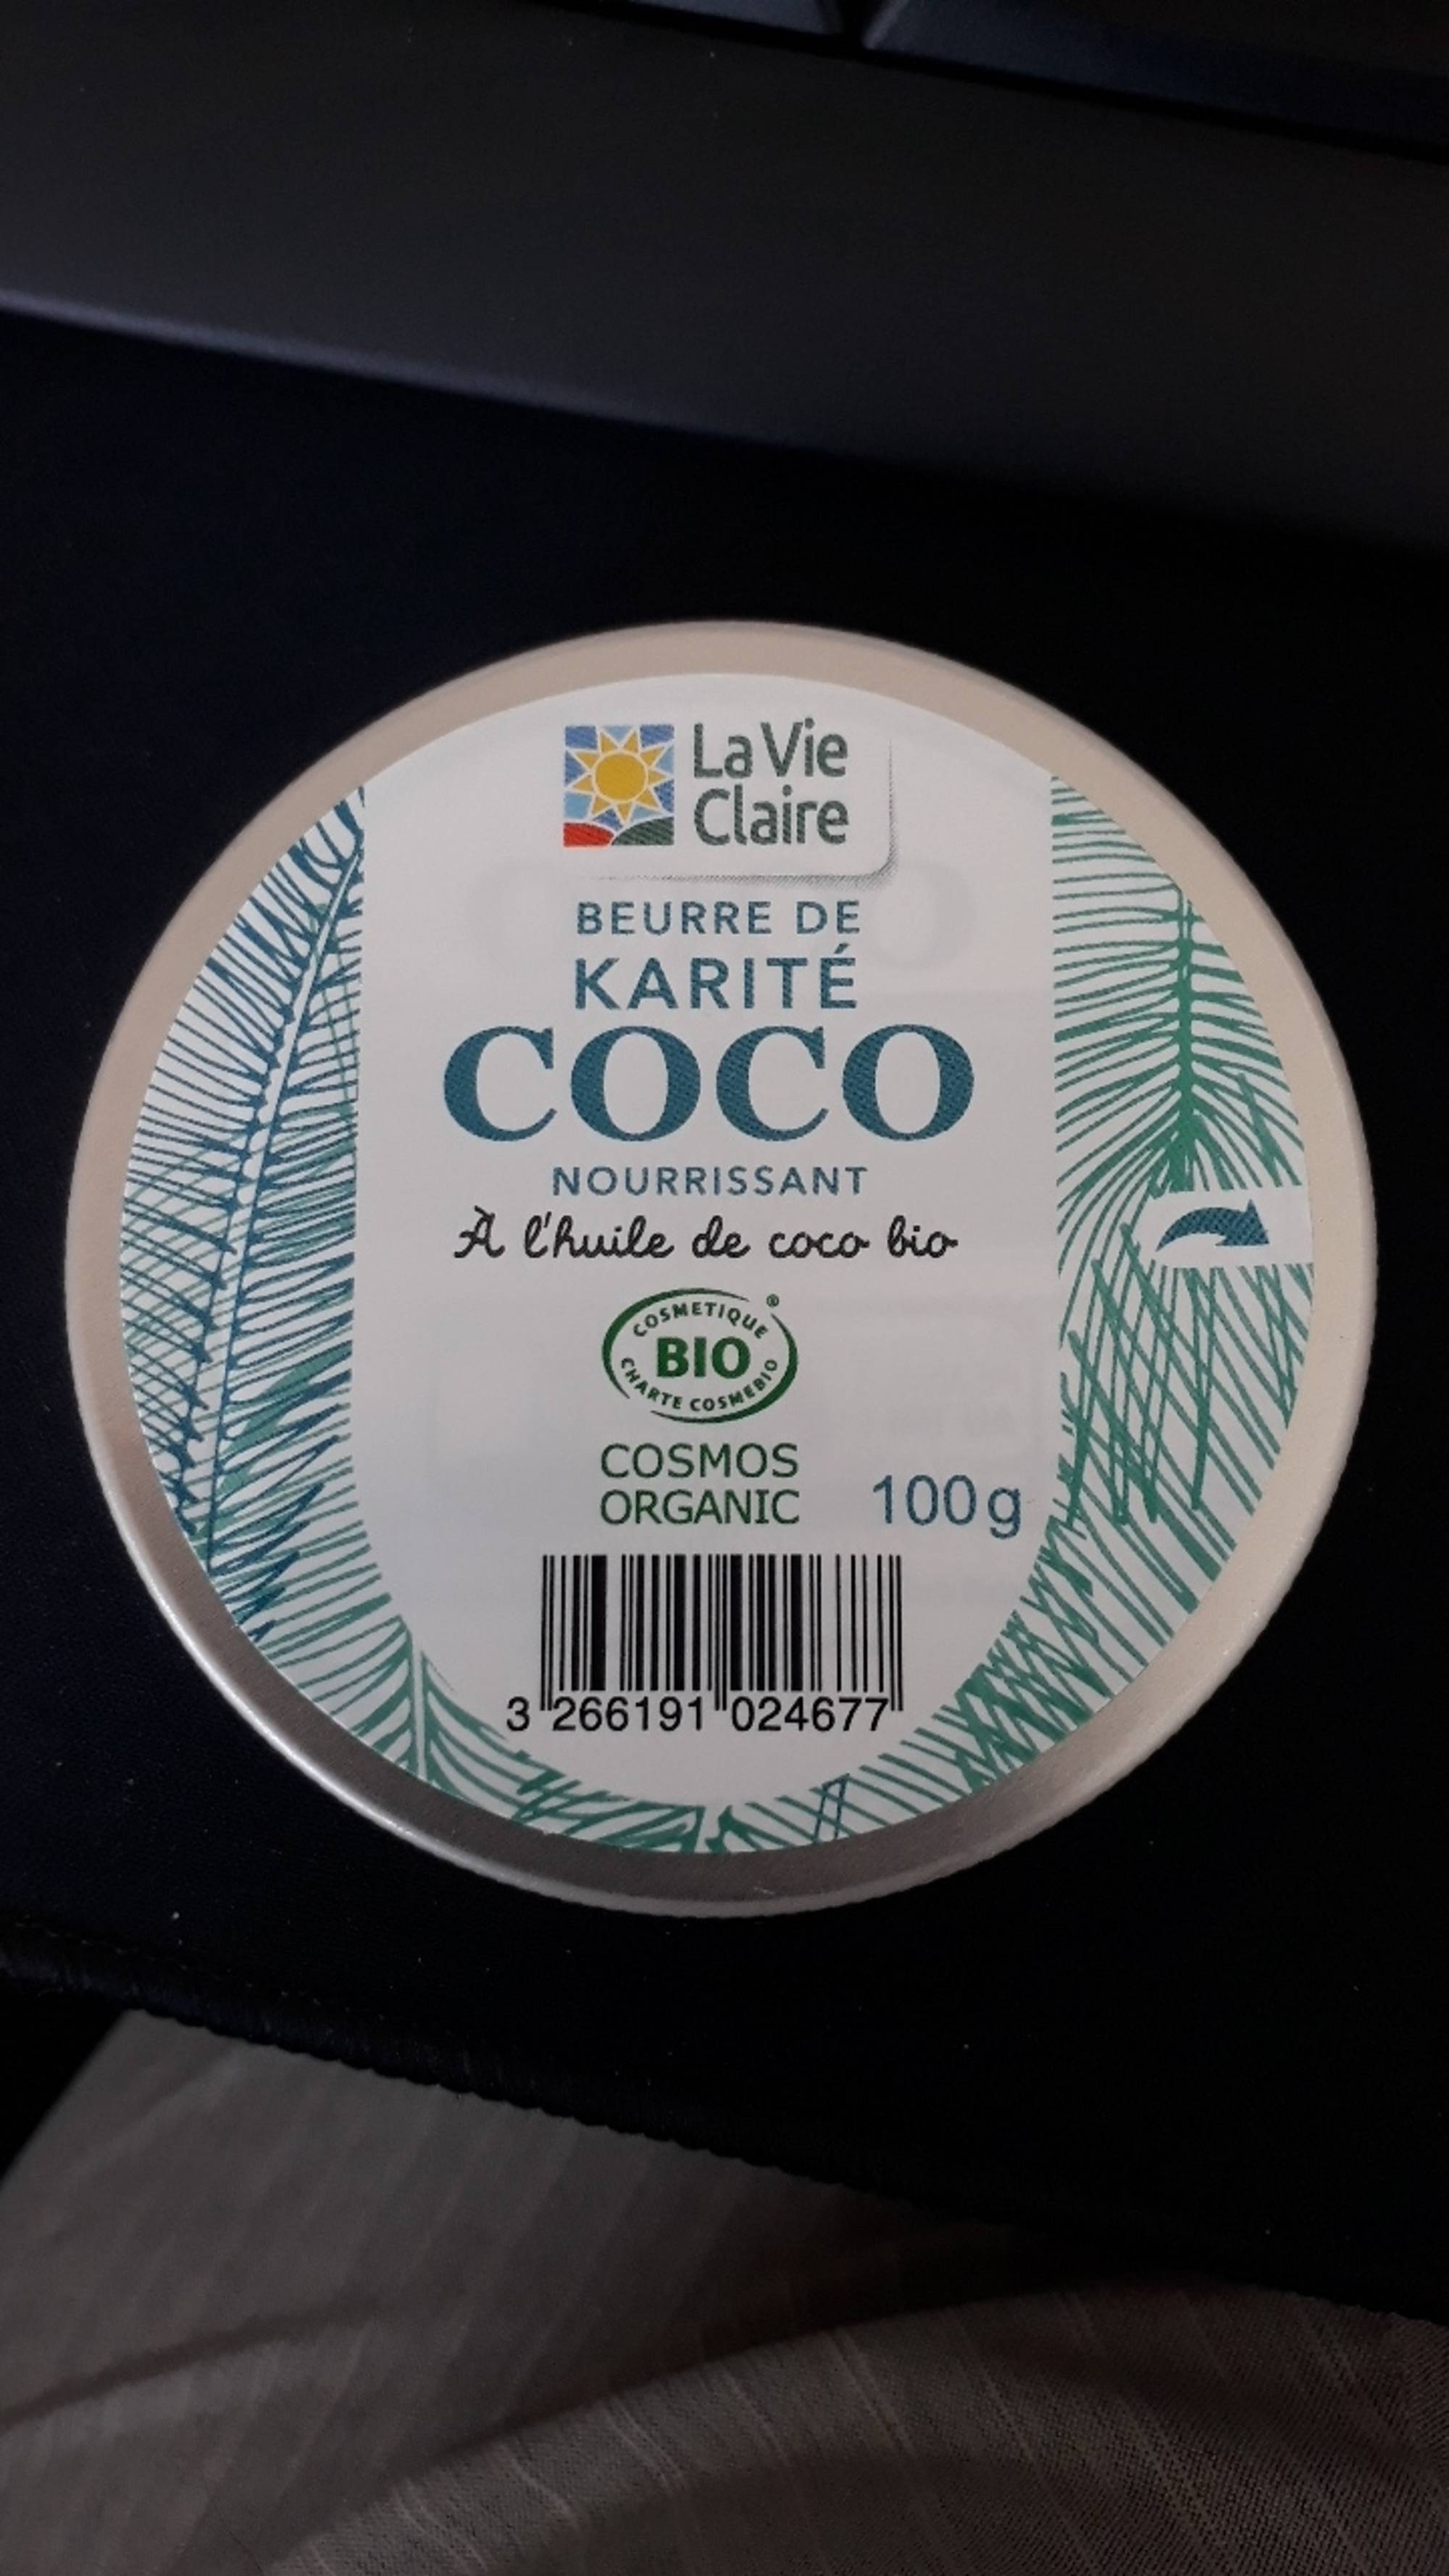 LA VIE CLAIRE - Beurre de karité coco nourrissant